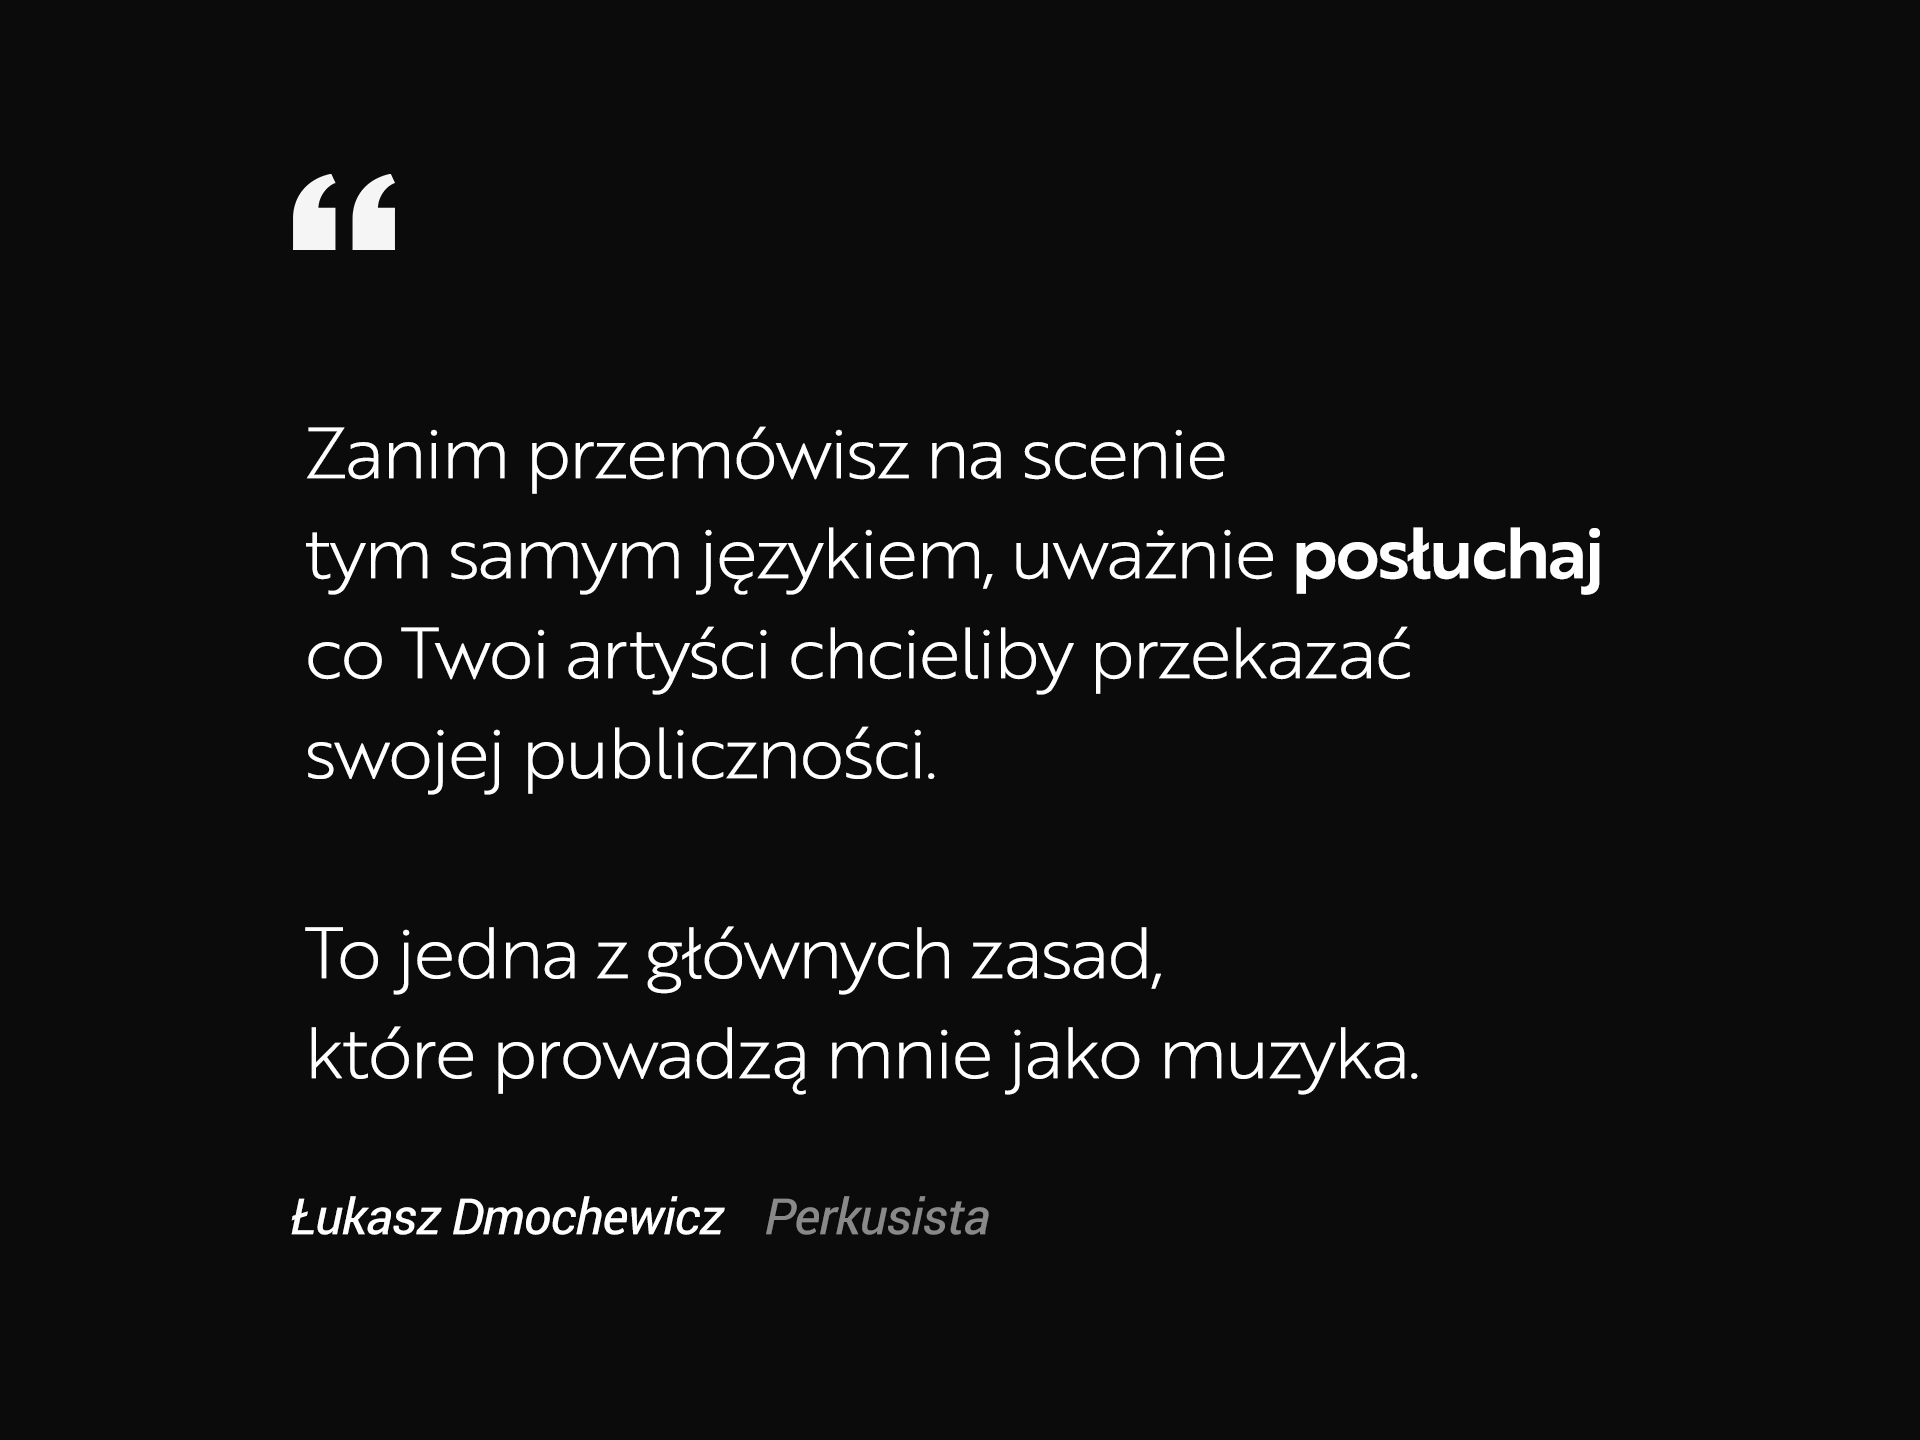 Dmochewicz